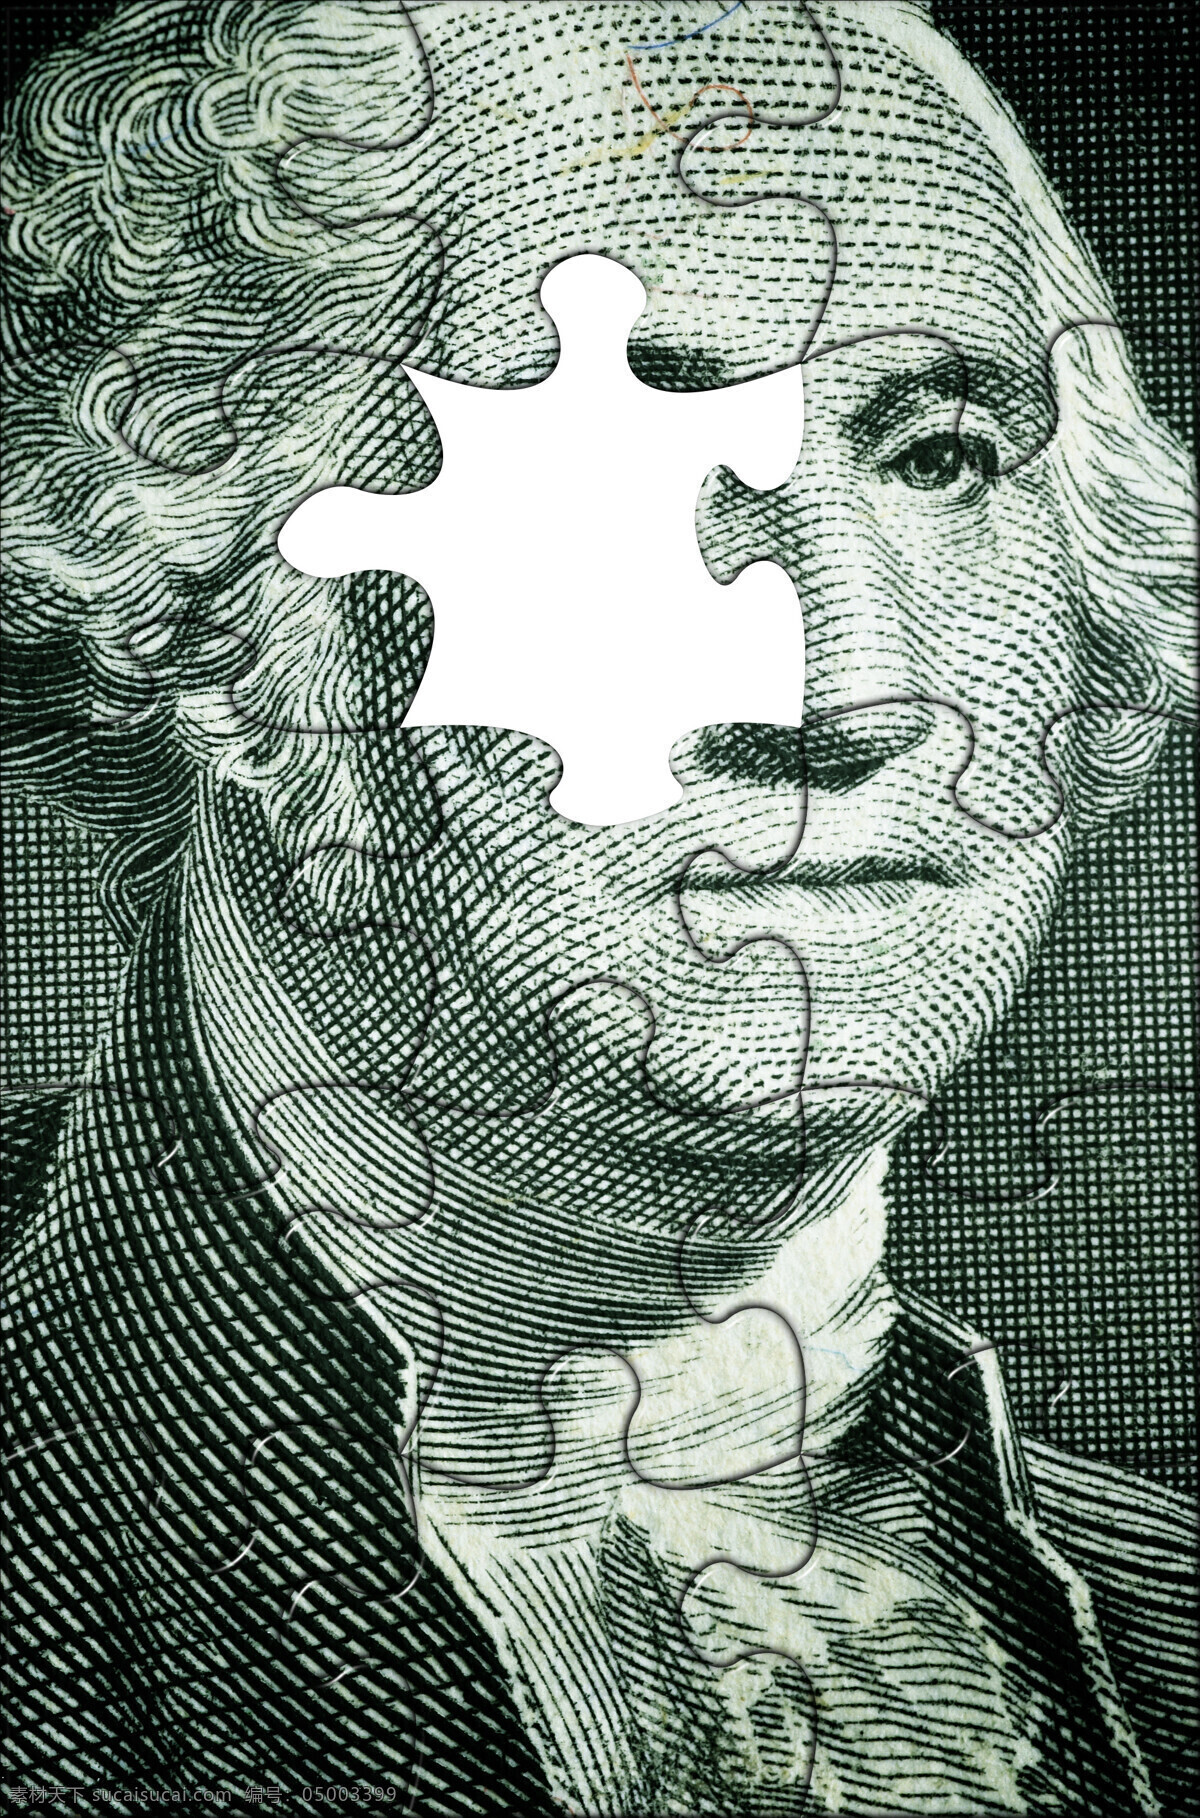 美元 拼图 创意 金融货币 钞票 纸钞 金钱 特写 创意图片 摄影图 高清图片 商务金融